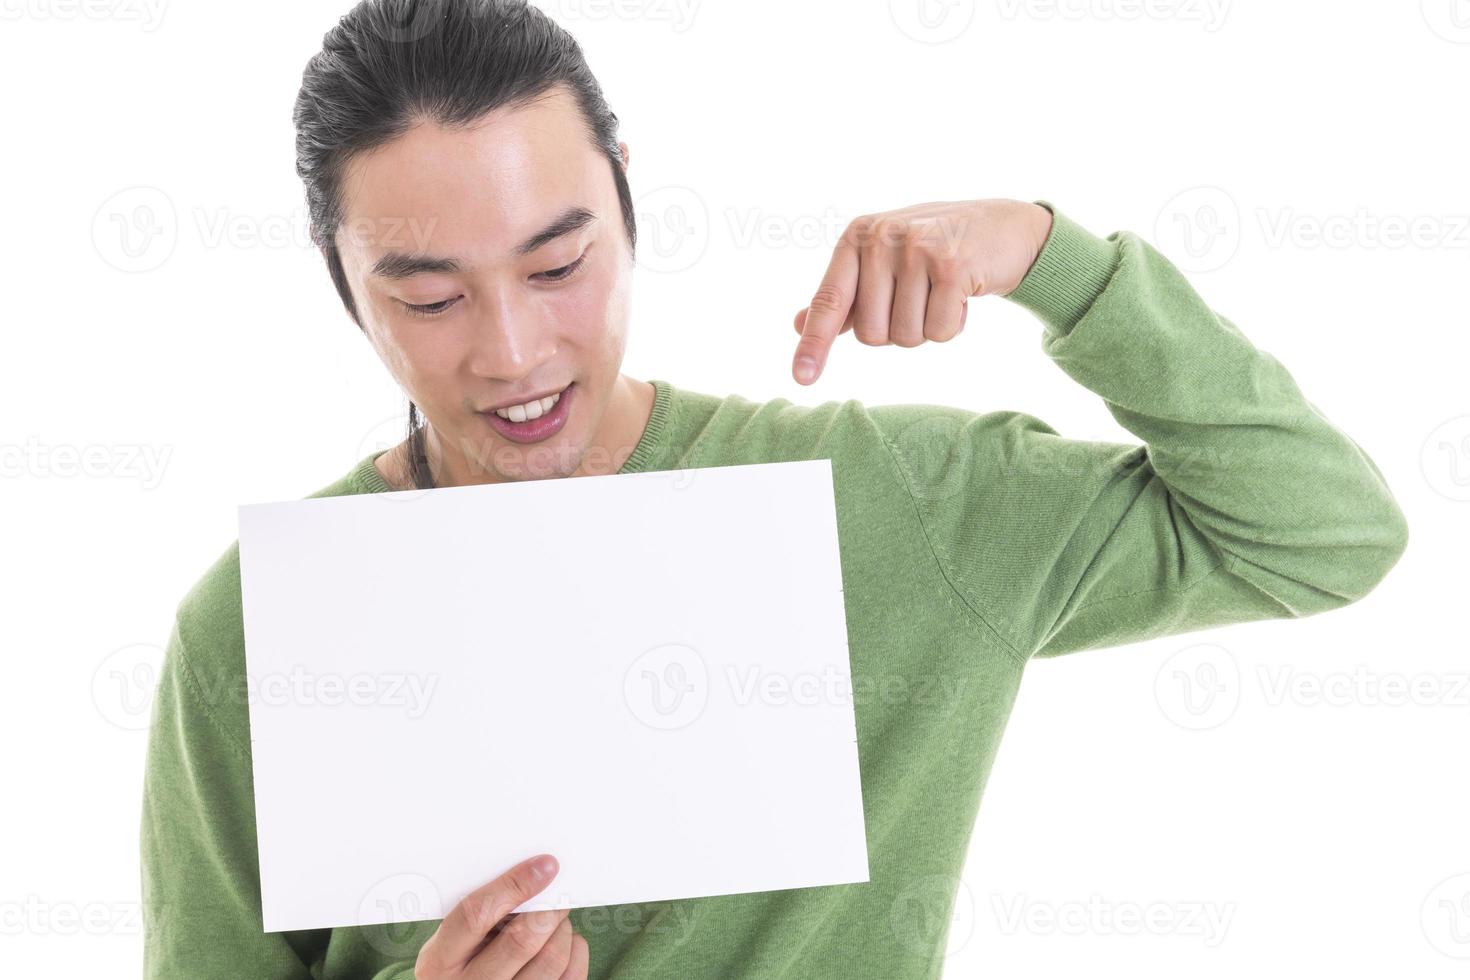 apuesto hombre asiático sosteniendo una pancarta vacía en blanco haciendo un buen signo con los dedos, sonriendo amigable foto